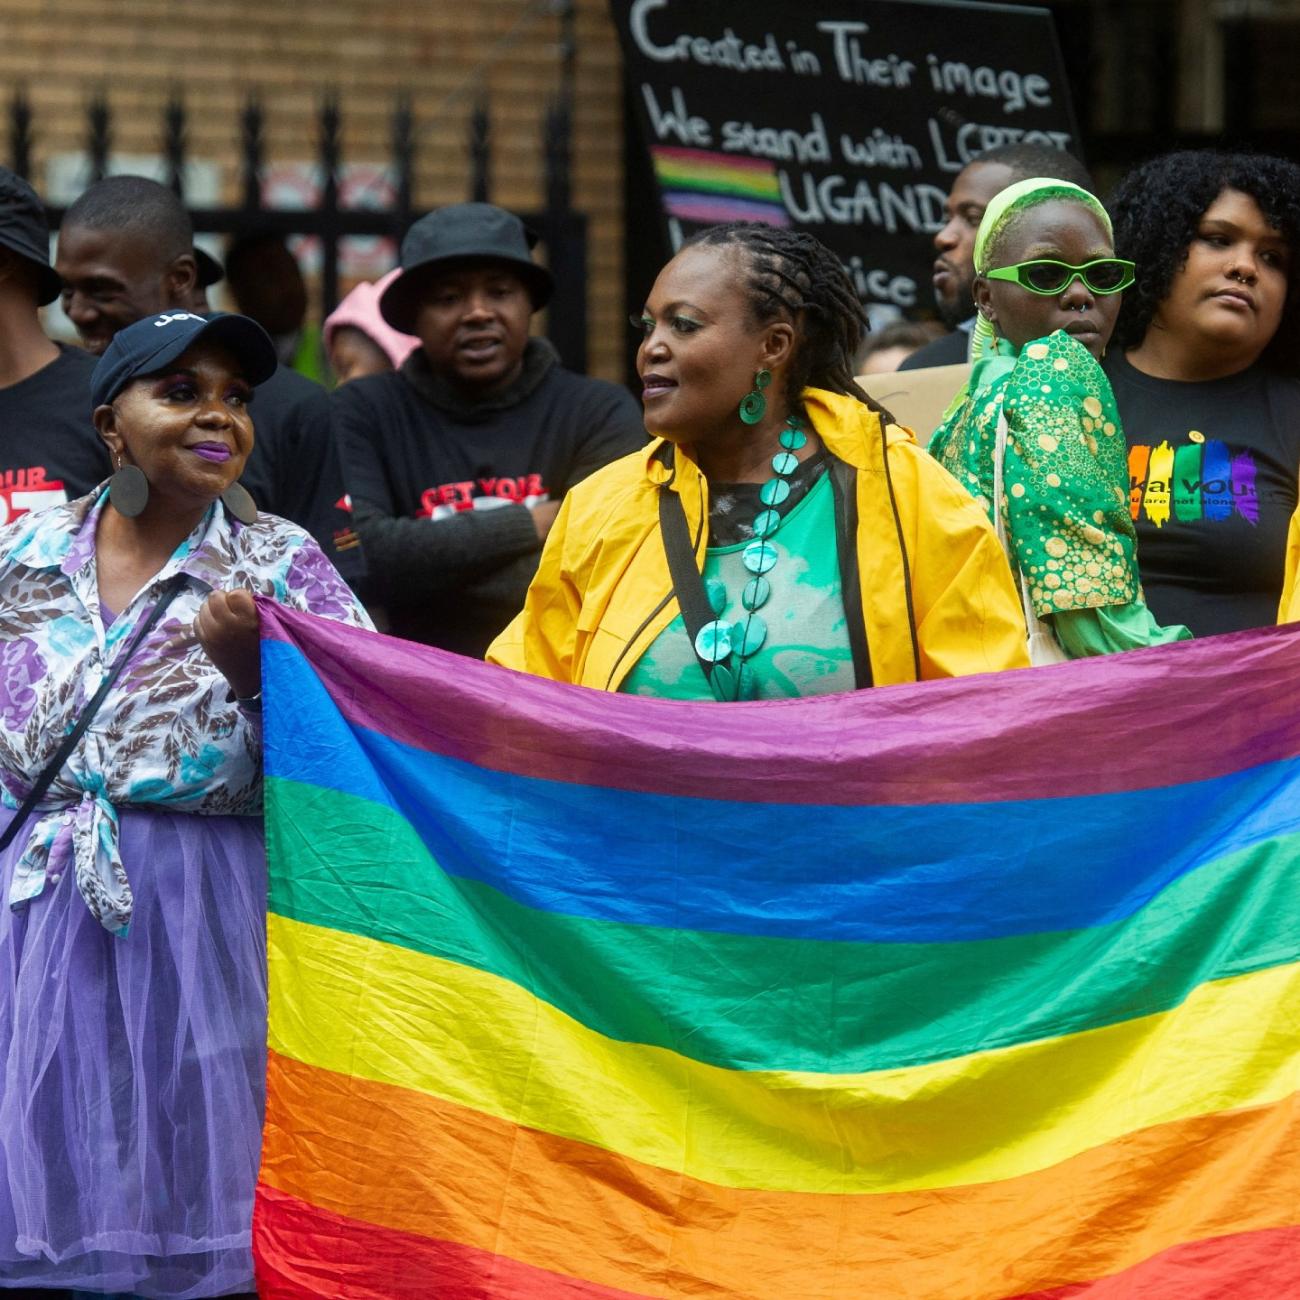 people demonstrate against Uganda's proposed antigay legislation